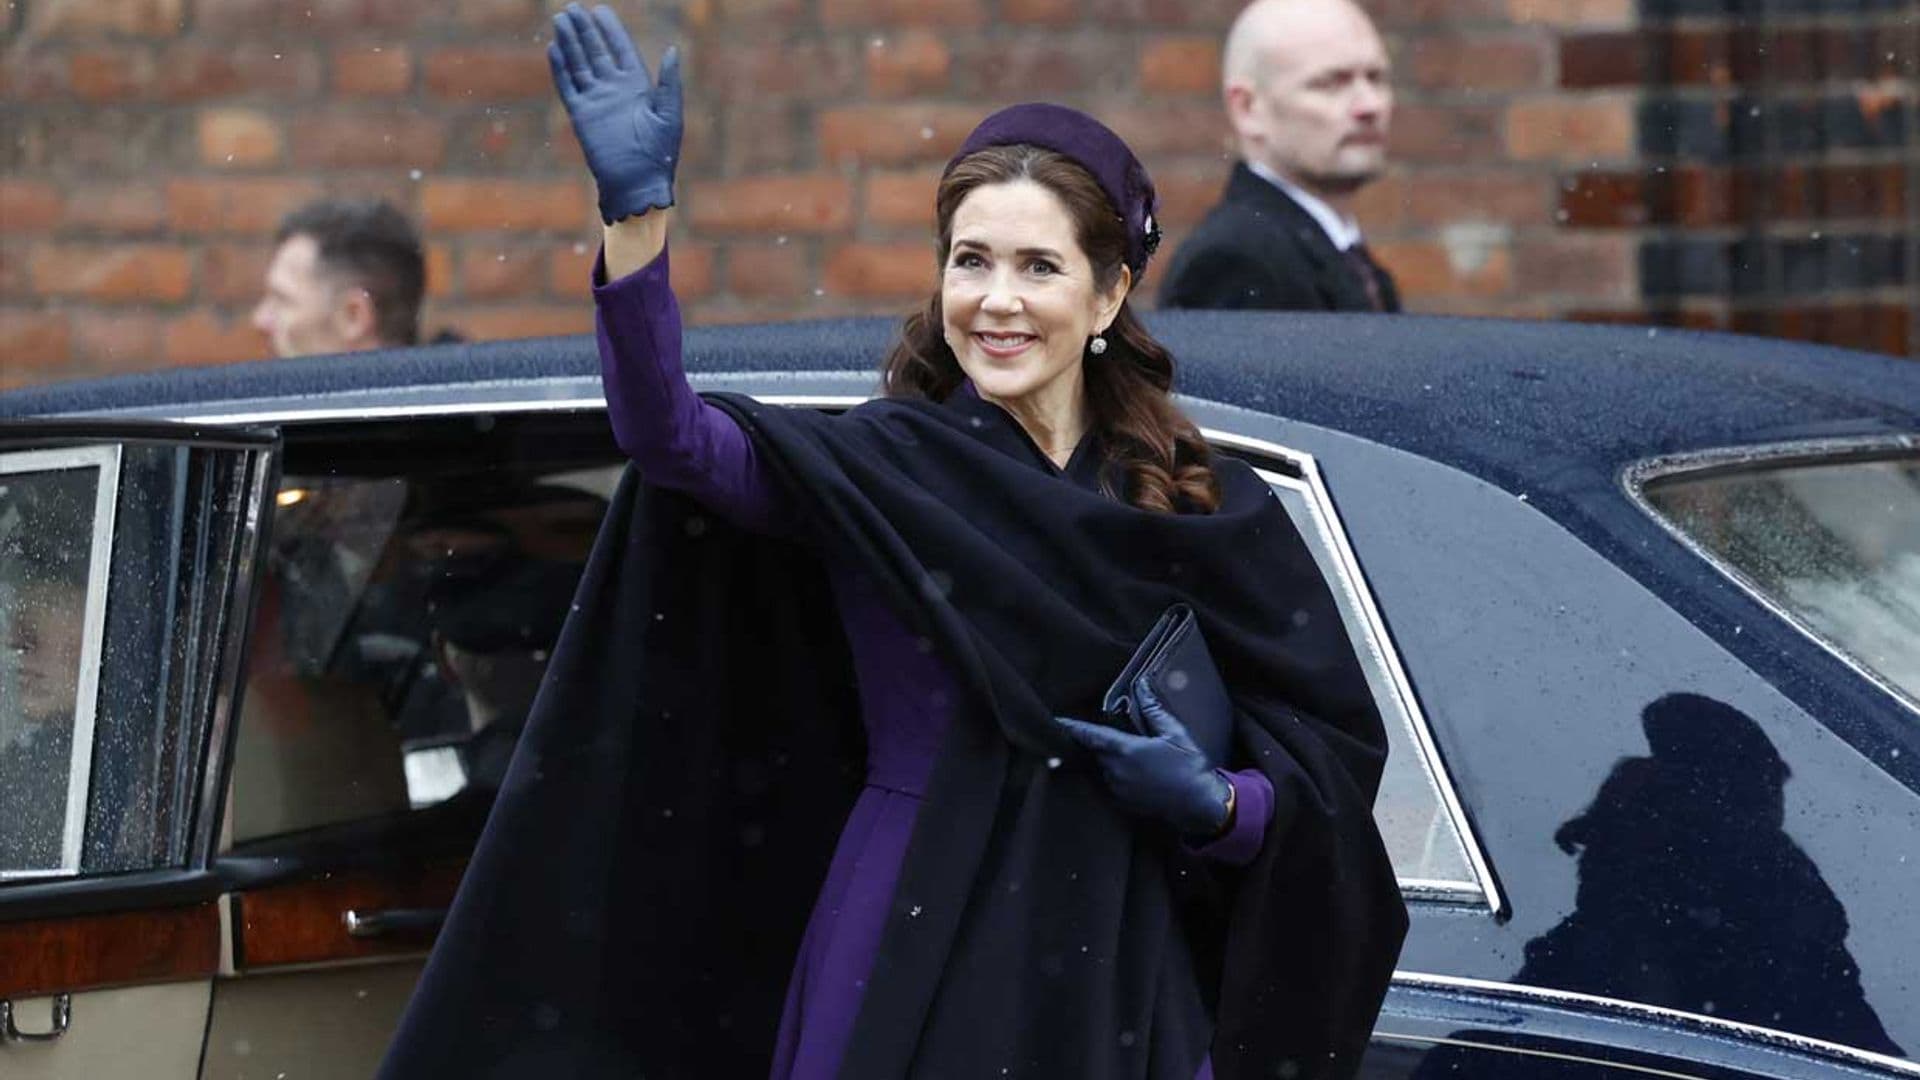 Mary de Dinamarca deslumbra desafiando a la nieve con el mismo vestido púrpura que llevó en la coronación de Carlos III